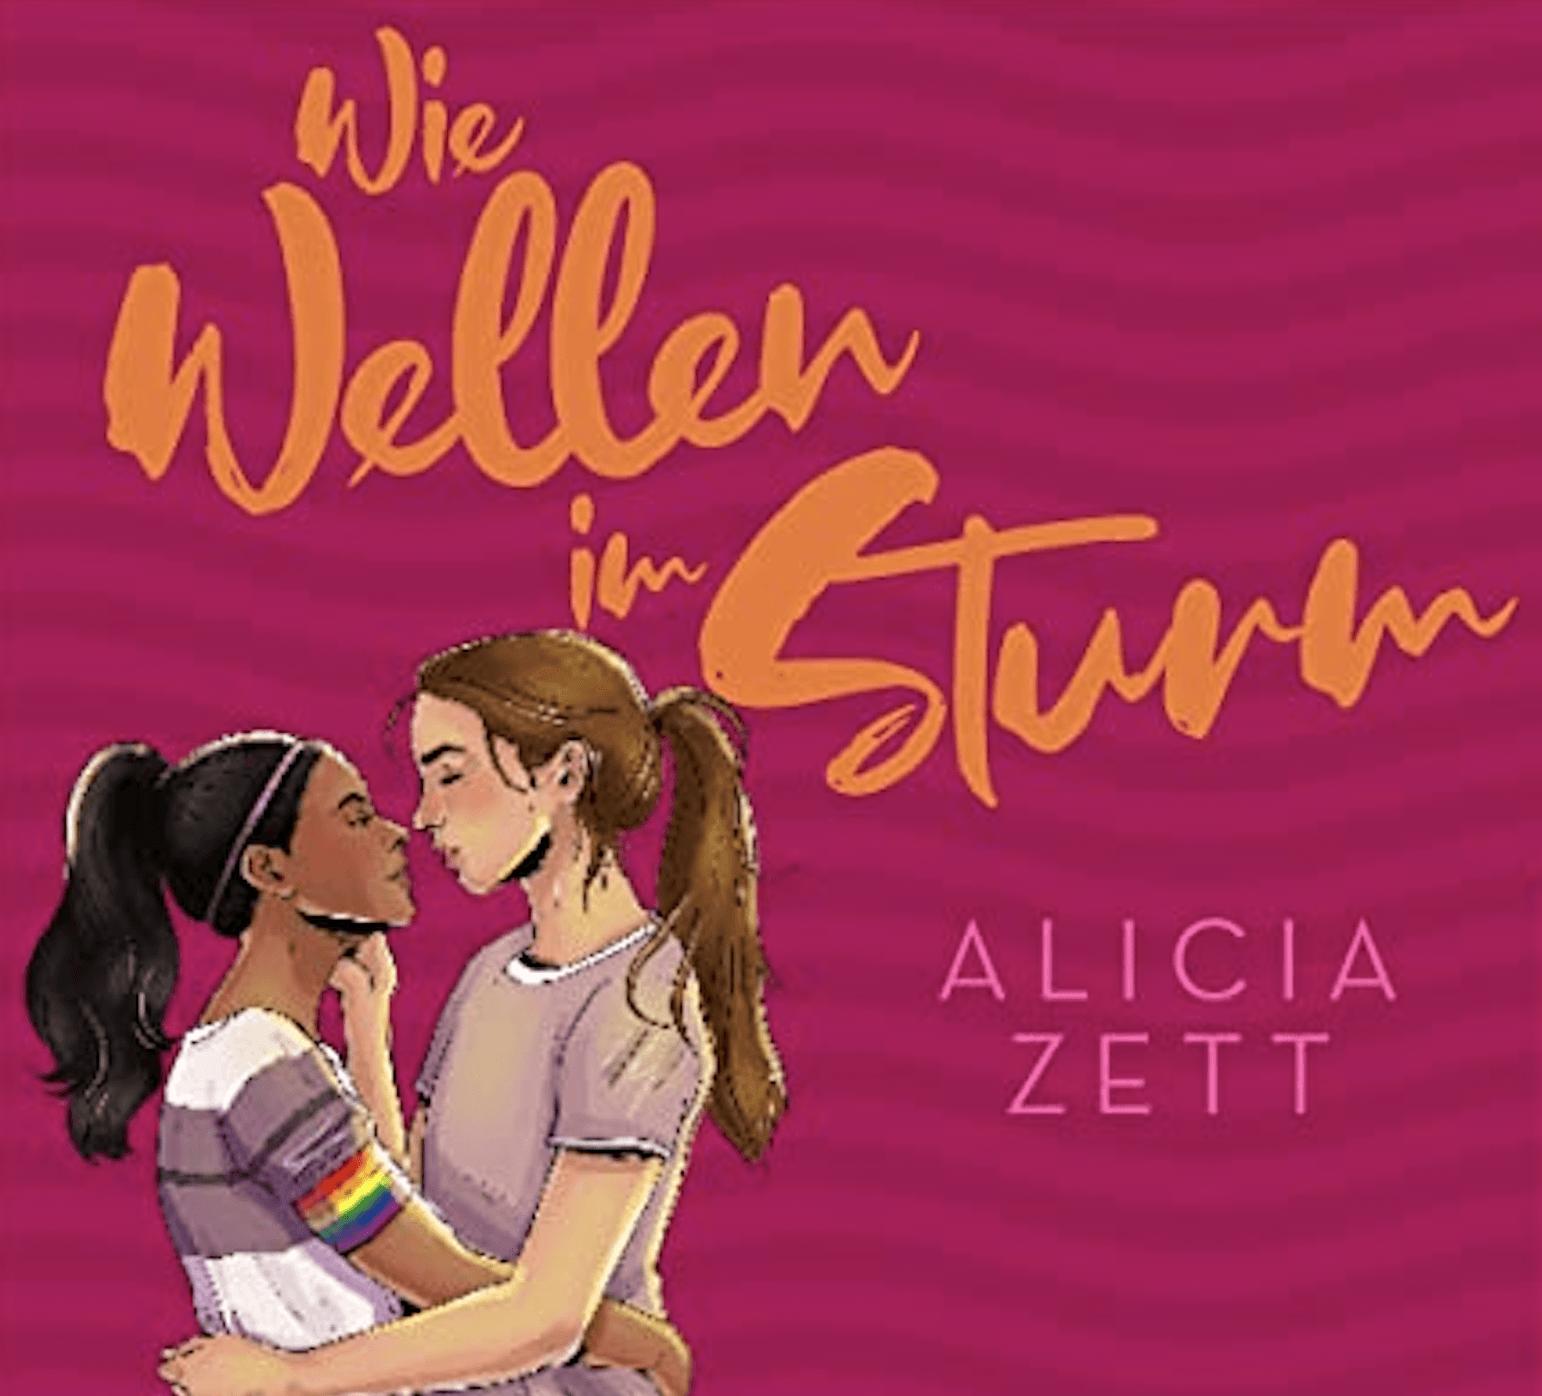 Das Cover des Buches "Wie Wellen im Sturm" ist zu sehen. Auf rötlichem gewellten Hintergrund steht der Titel und zwei Mädchen die sich in den Armen halten und zum Kuss ansetzten. Eins der Mädchen trägt eine Regenbogenarmbinde und ein Fußballtrikot